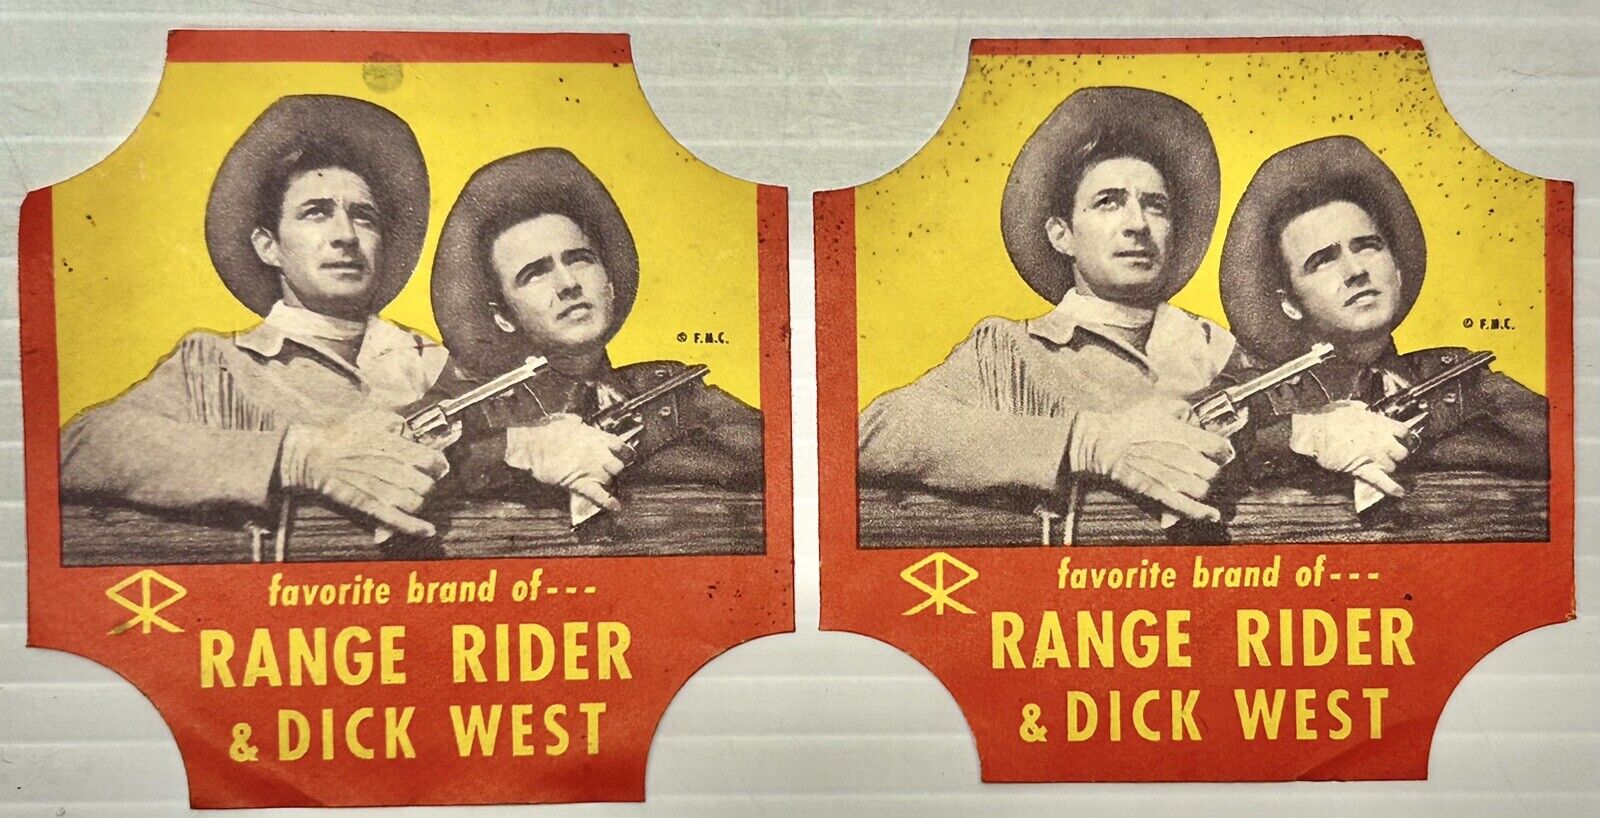 2 Vintage RANGE RIDERS Leslie Henry & Dick West Bread Wrapper Ends Labels